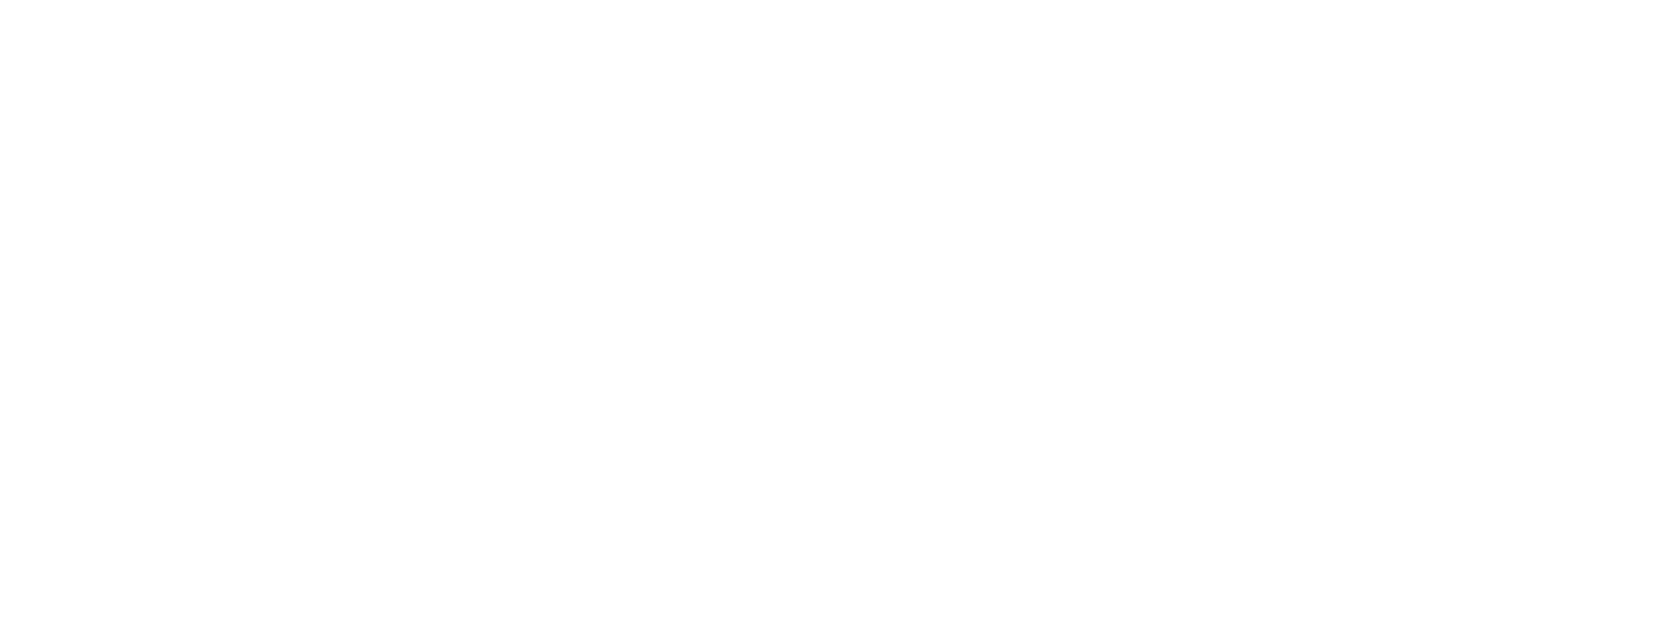 A theme logo of Mackenthun's